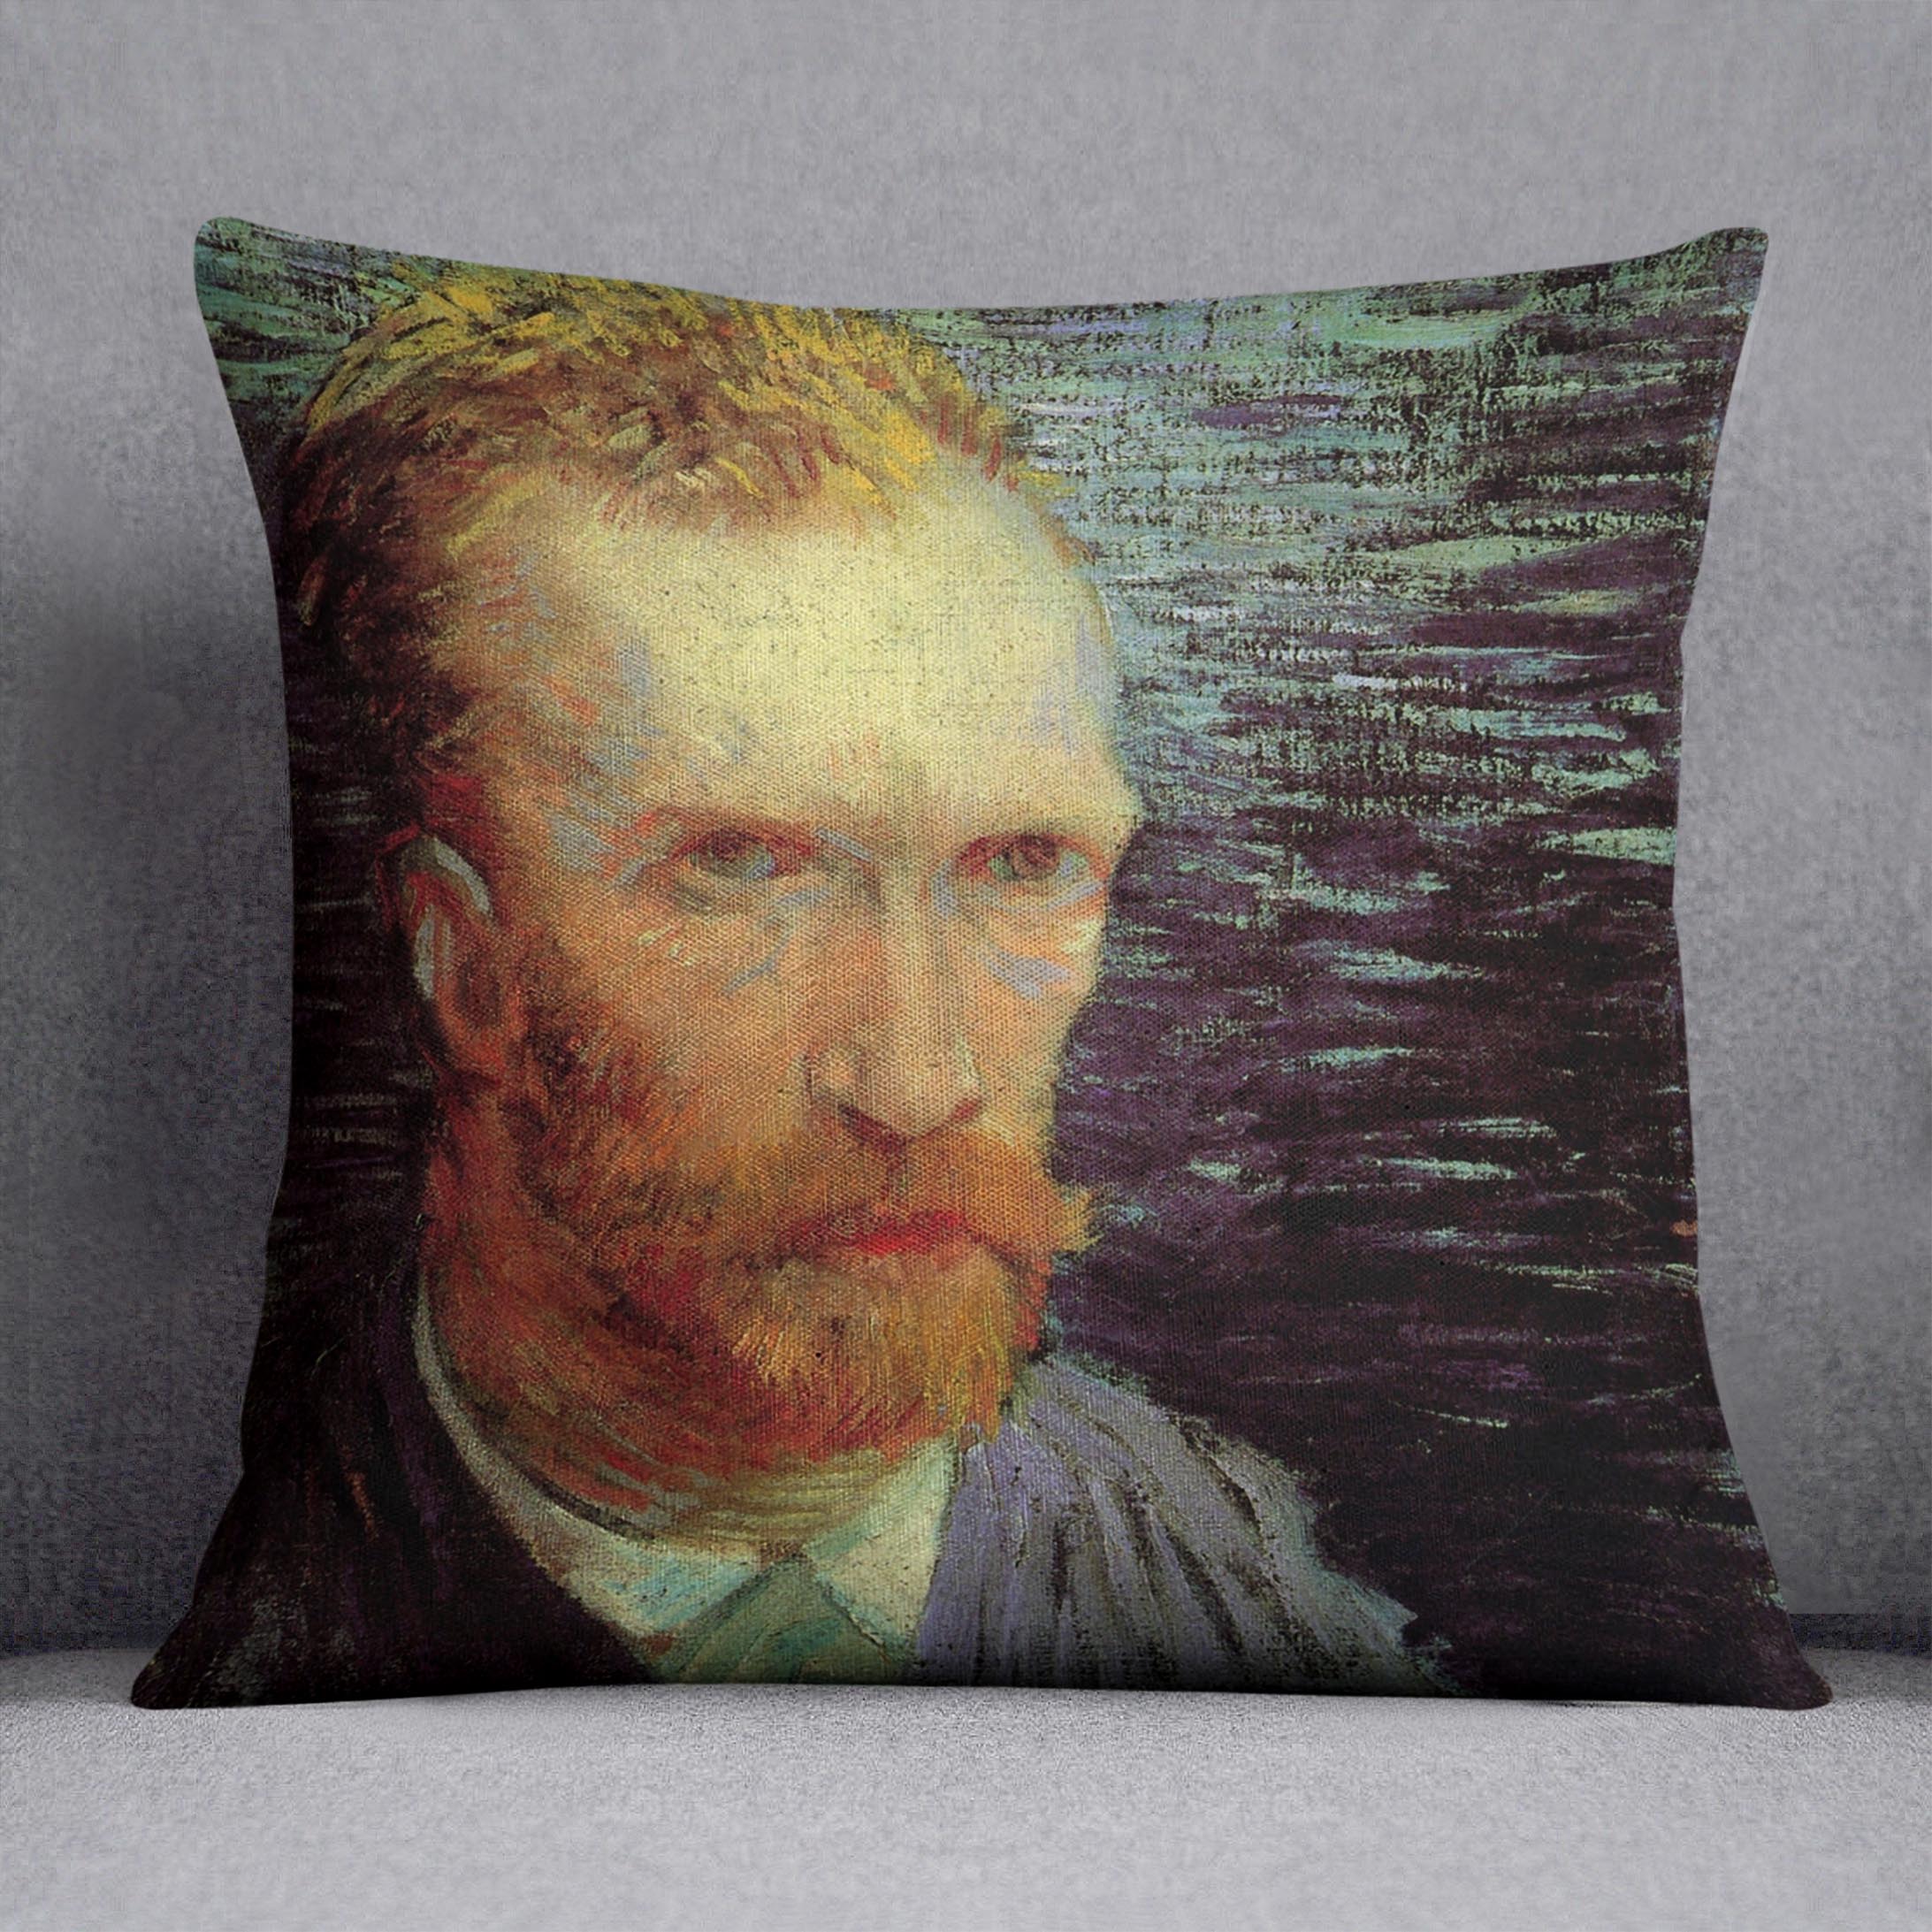 Self-Portrait 7 by Van Gogh Cushion